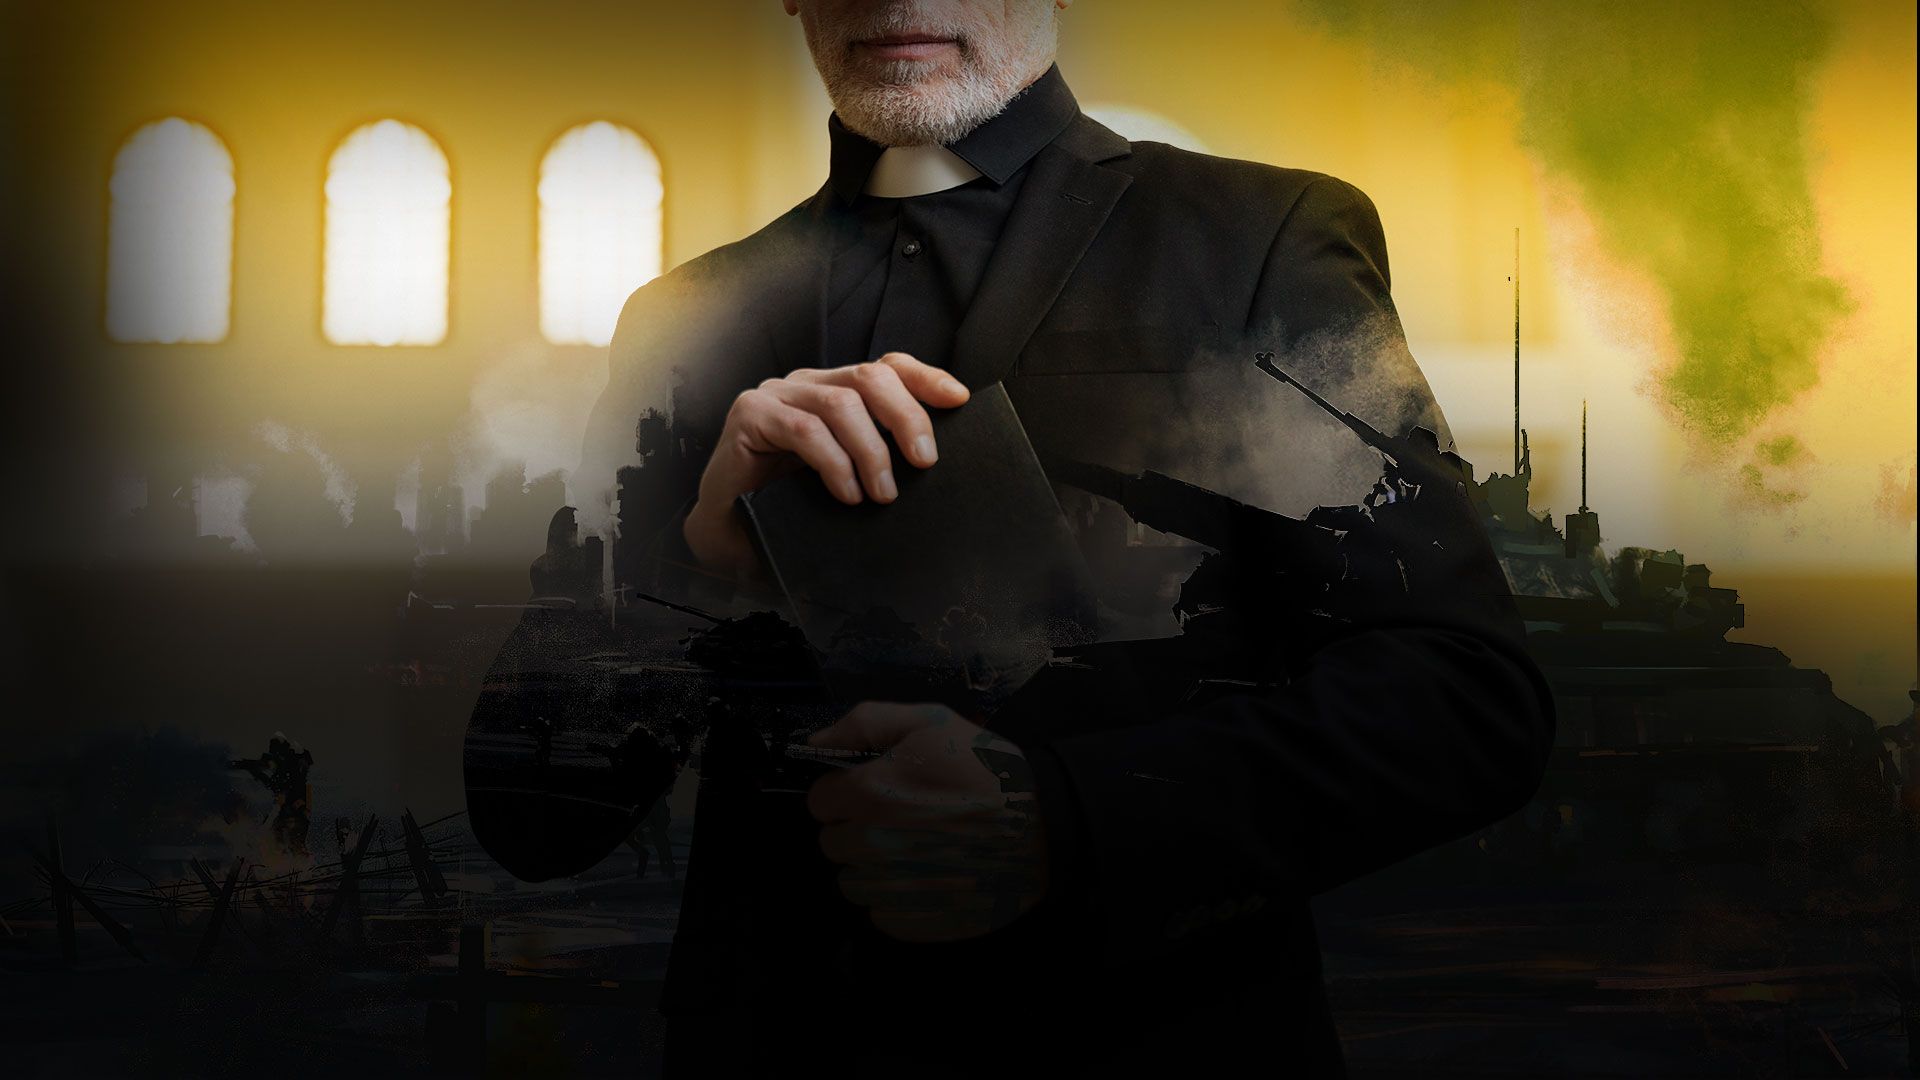 Promotional image for Как относиться к пастору, который поддерживает войну?